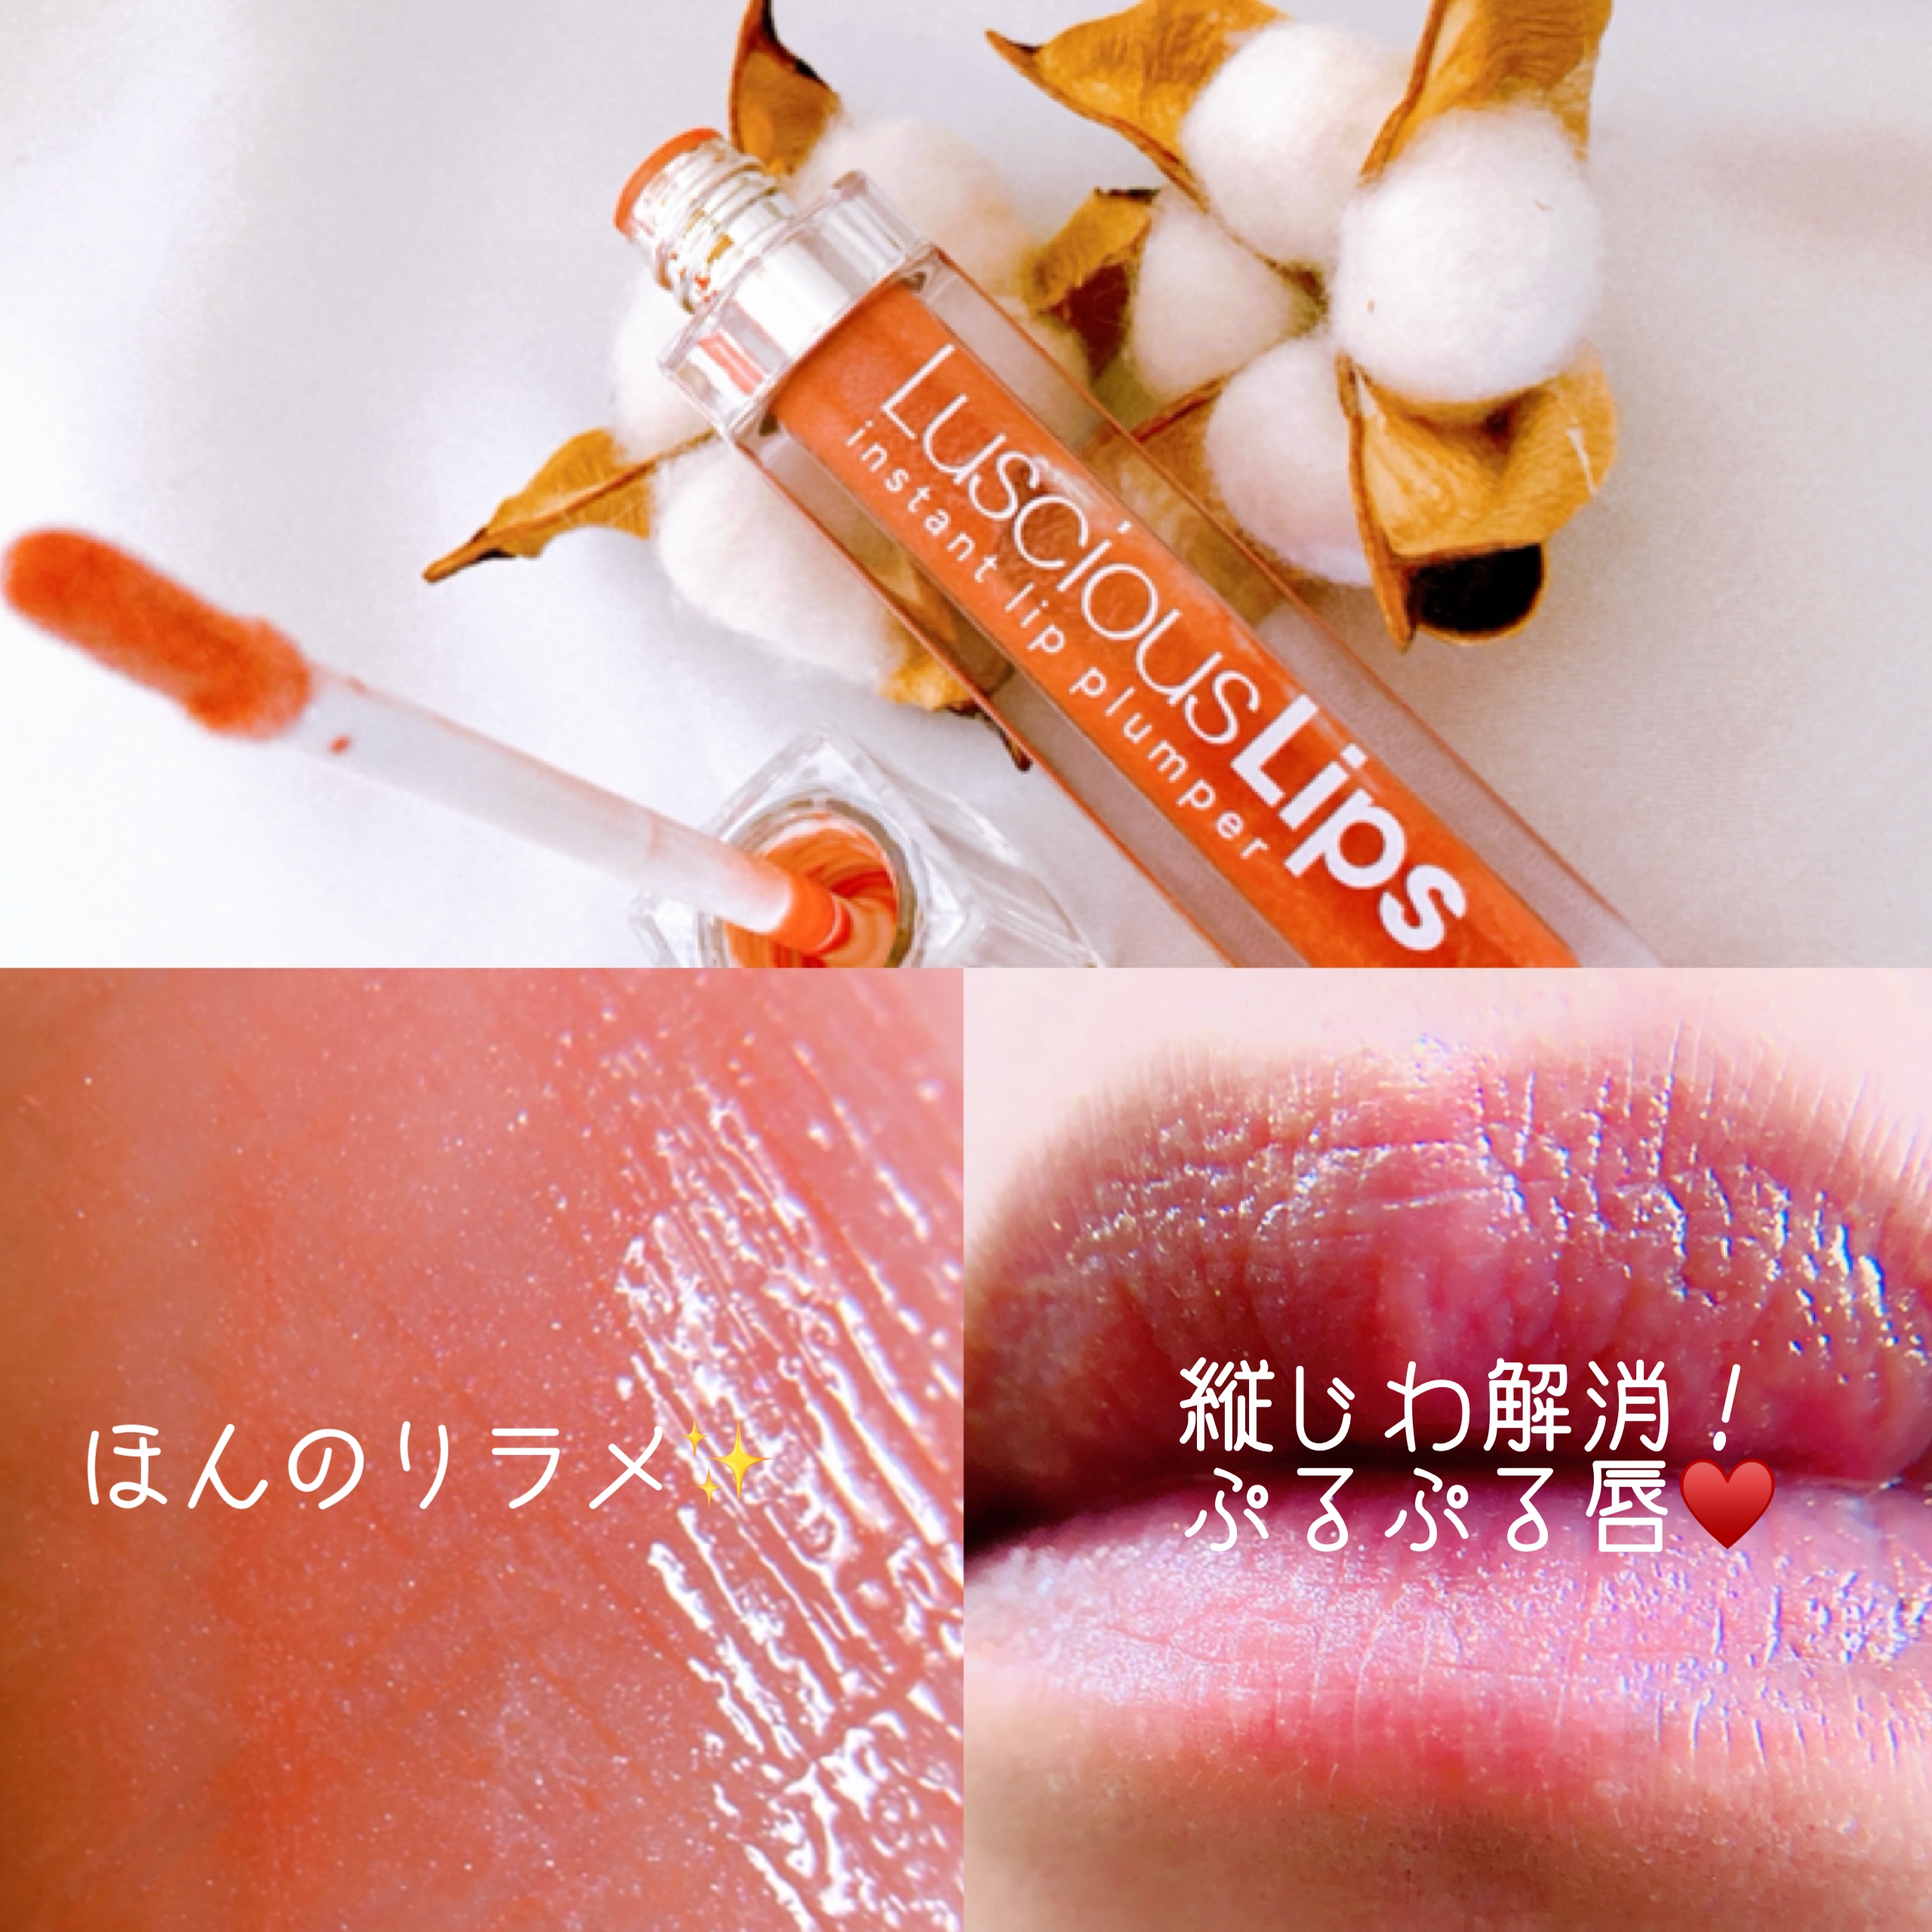 LusciousLips(ラシャスリップス) ラシャスリップス (リップ美容液)を使ったメグさんのクチコミ画像4